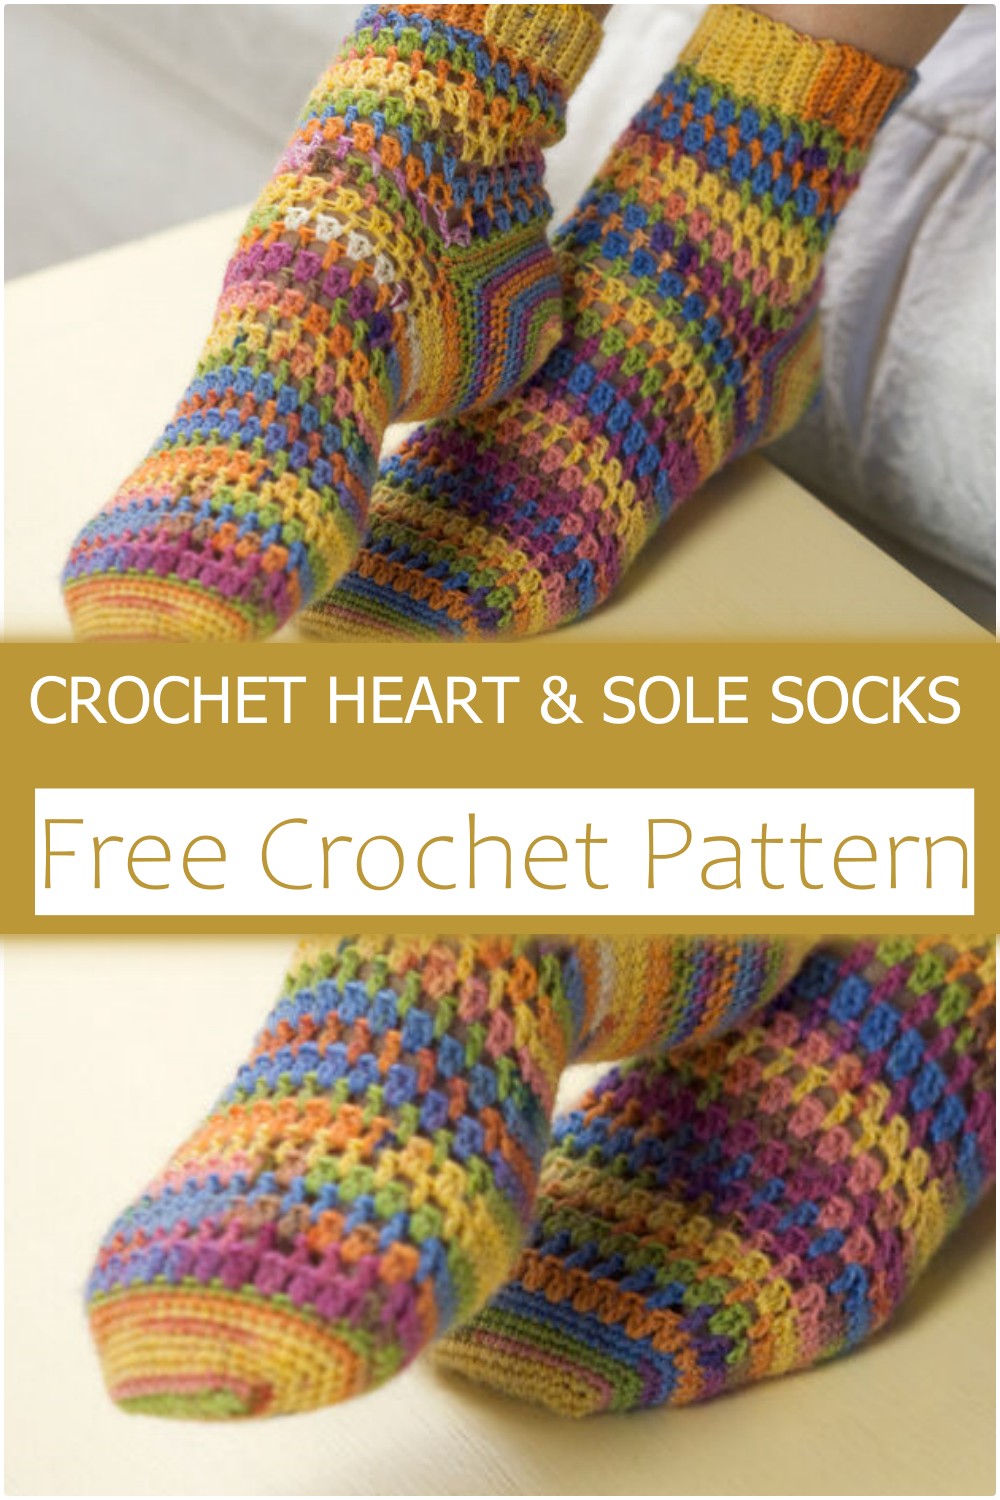 CROCHET HEART & SOLE SOCKS